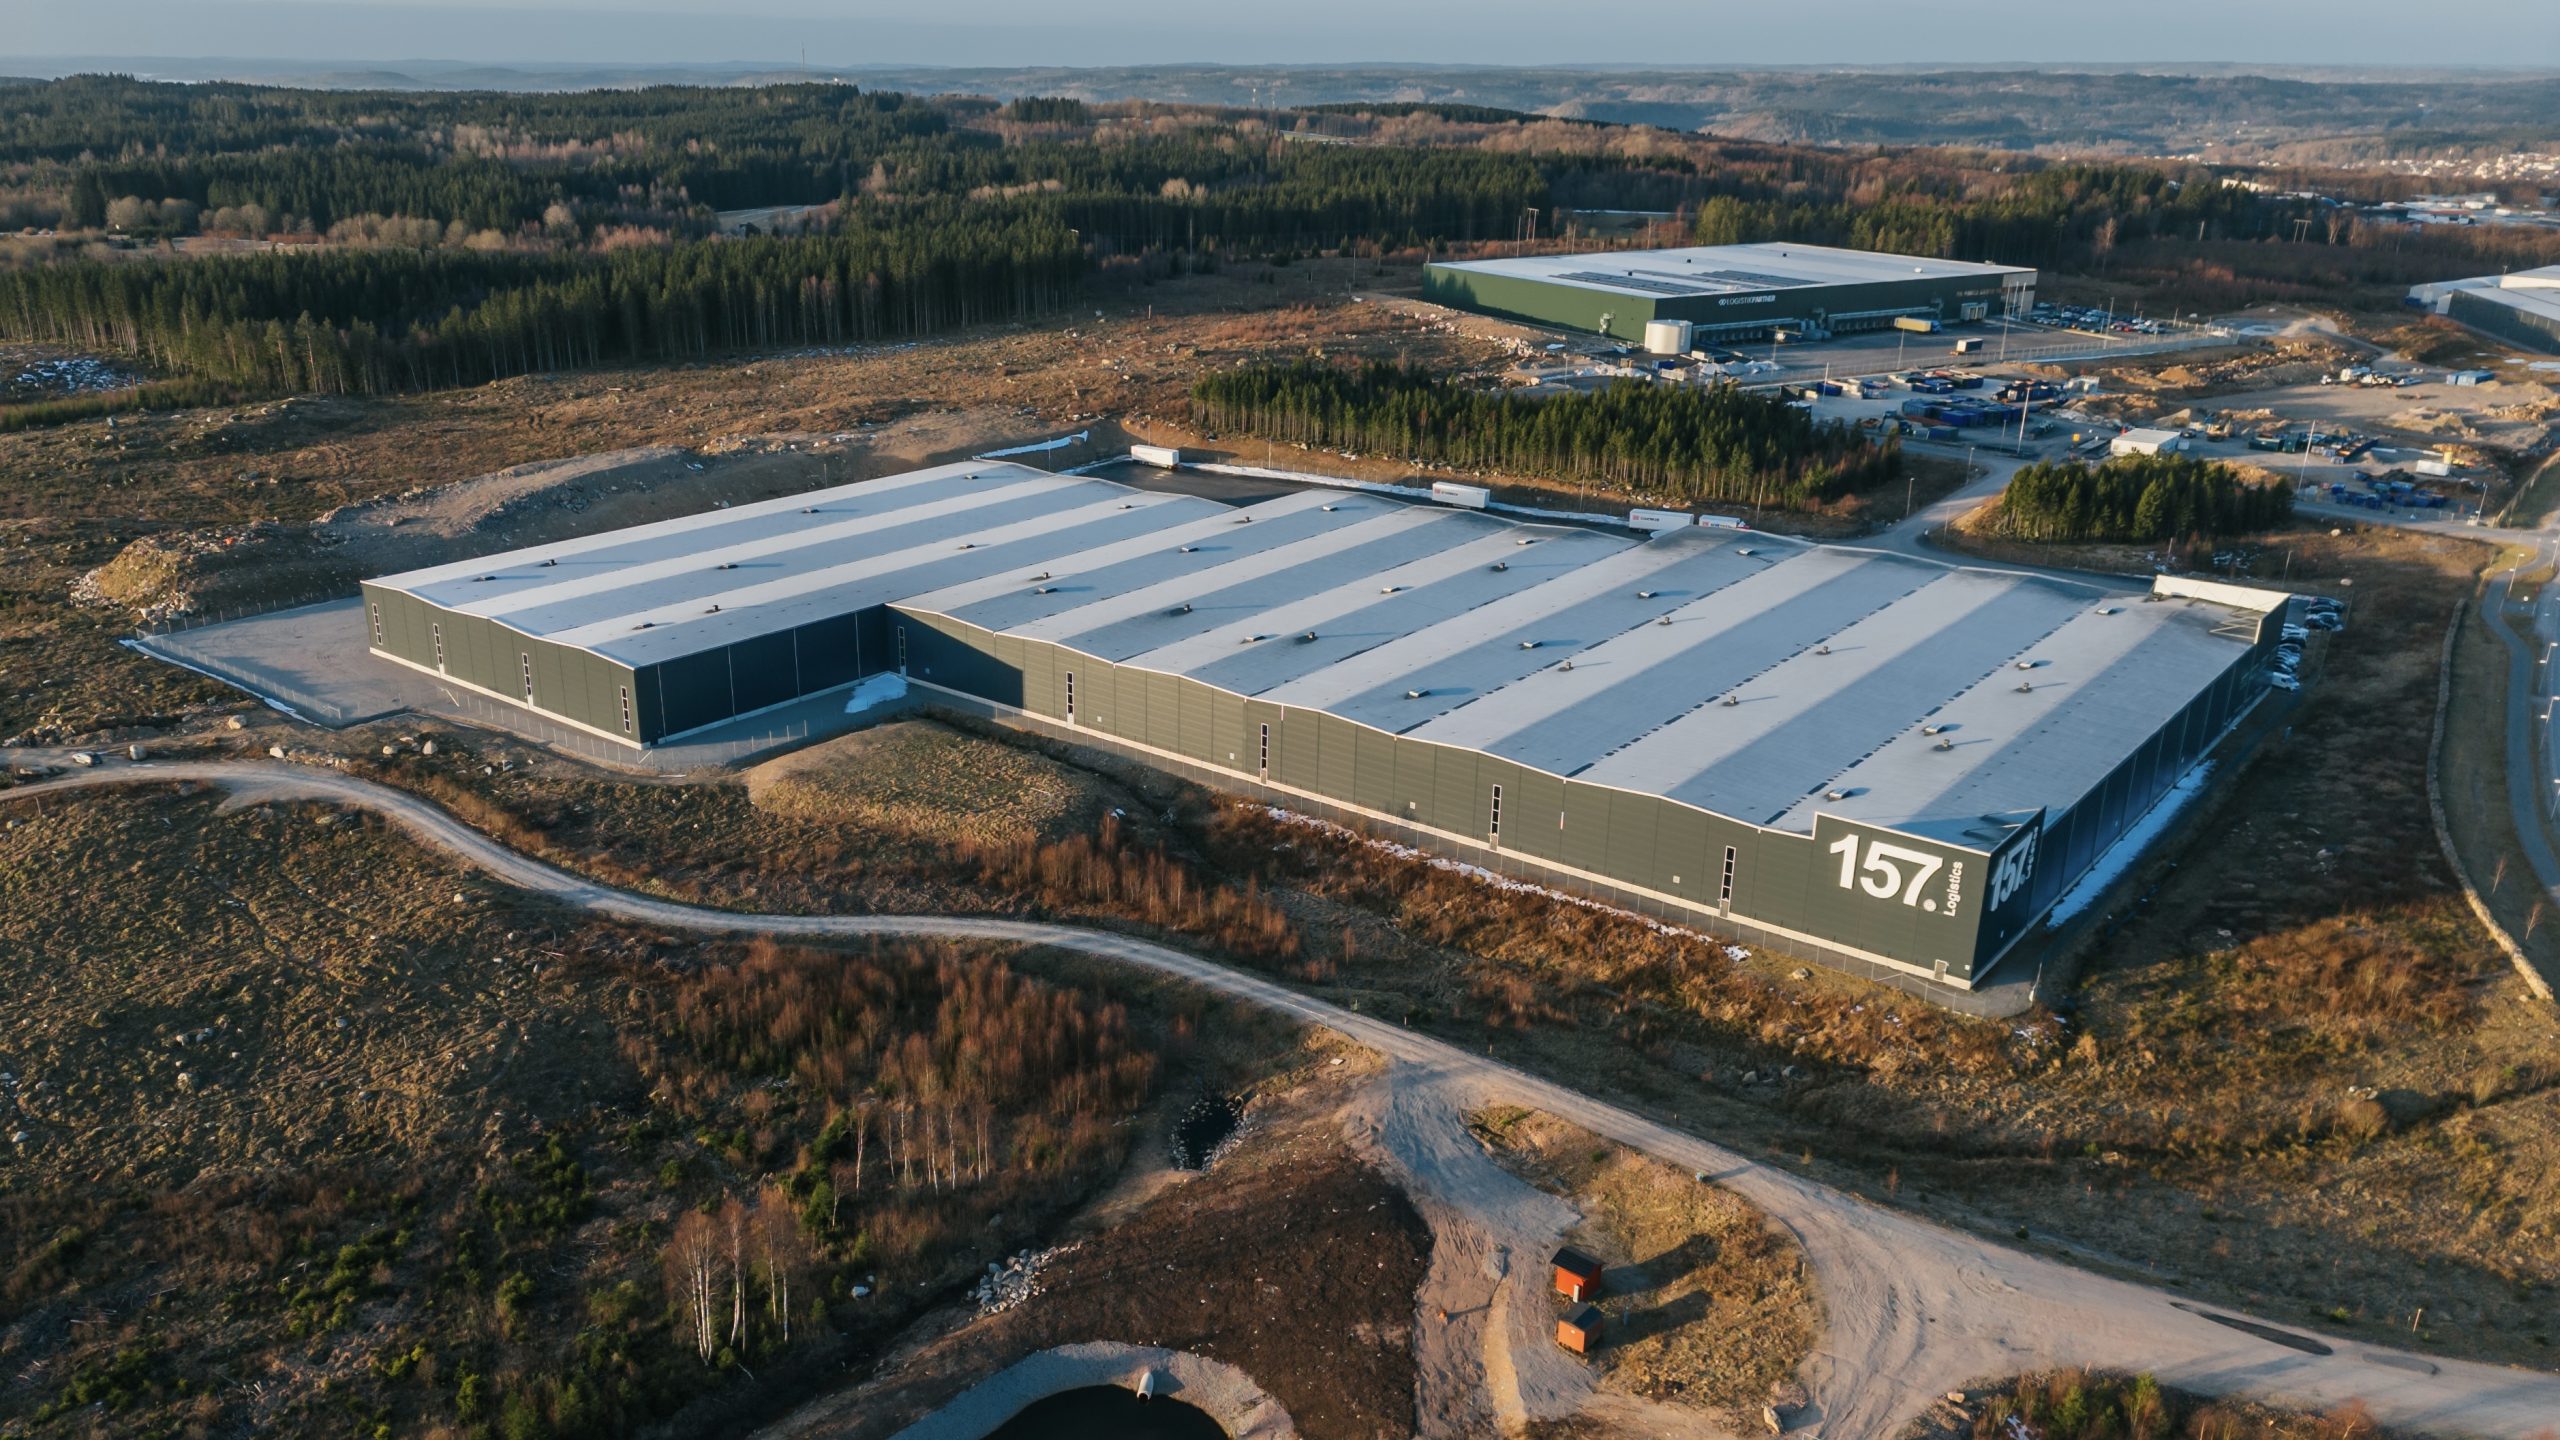 För fjärde gången i rad: ByggArvid vinner upphandlingen för att bygga Etapp 4 av Lager 157s lagerbyggnad i Ulricehamn